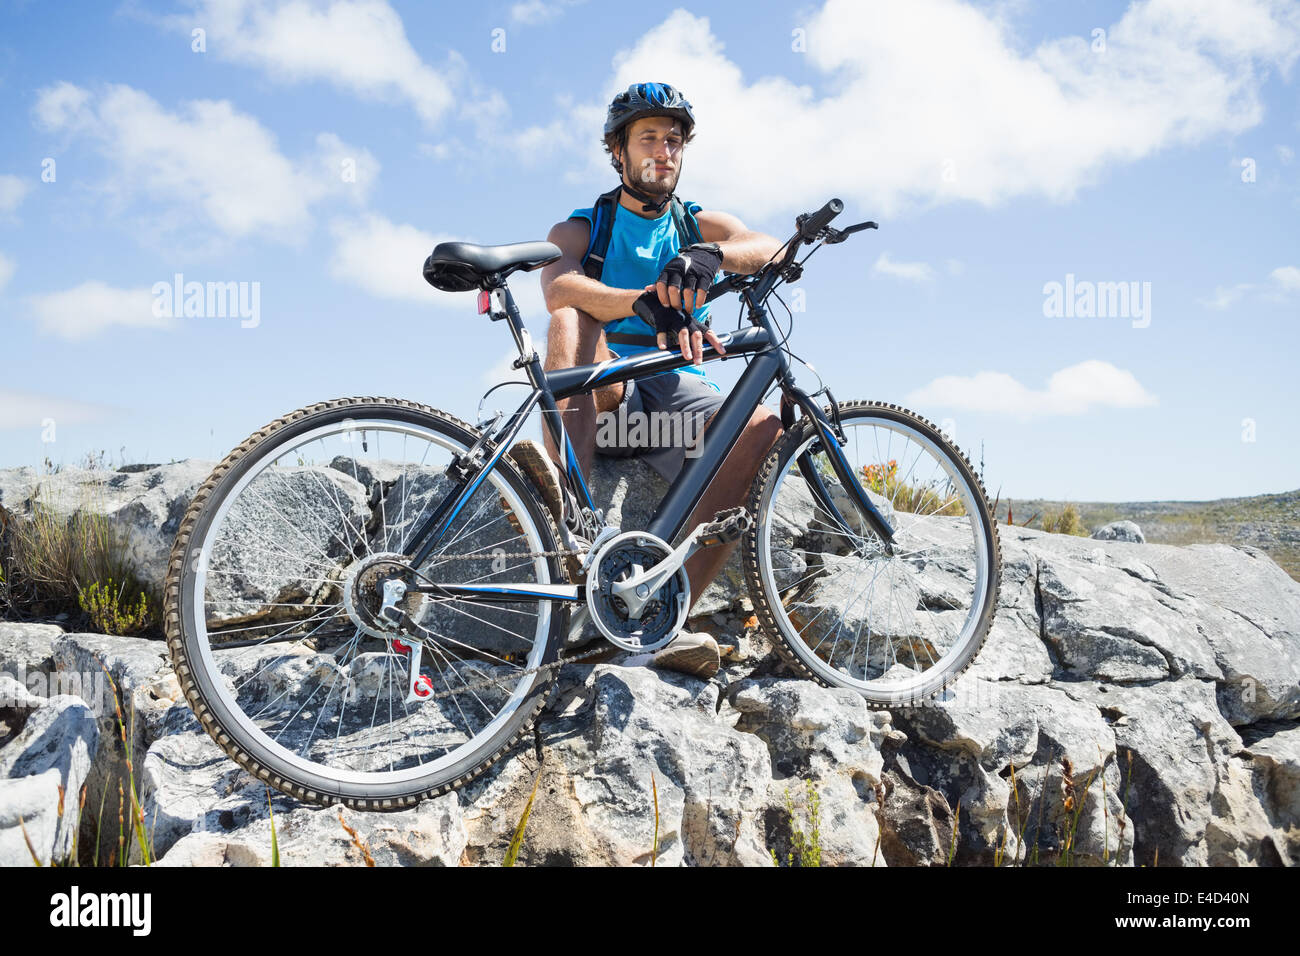 Fit cyclist taking a break on rocky peak Stock Photo